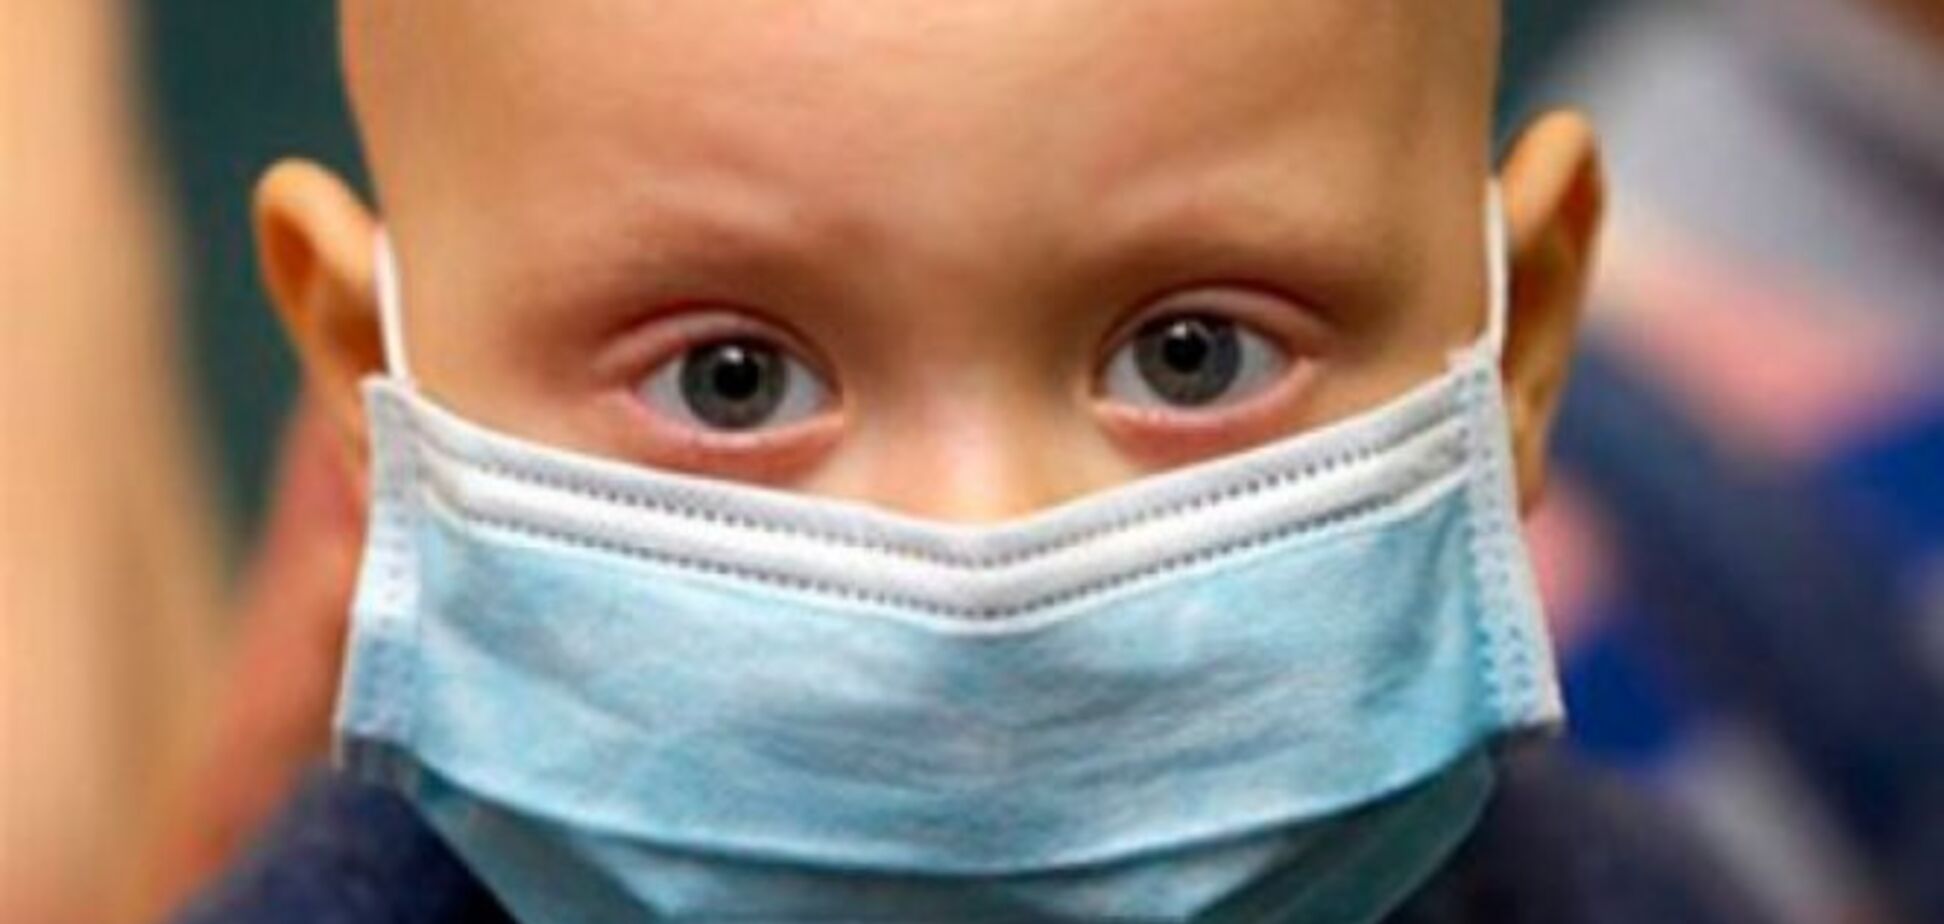  'Нема про що турбуватися': педіатр пропустив гігантську пухлину у дитини і втратив час 